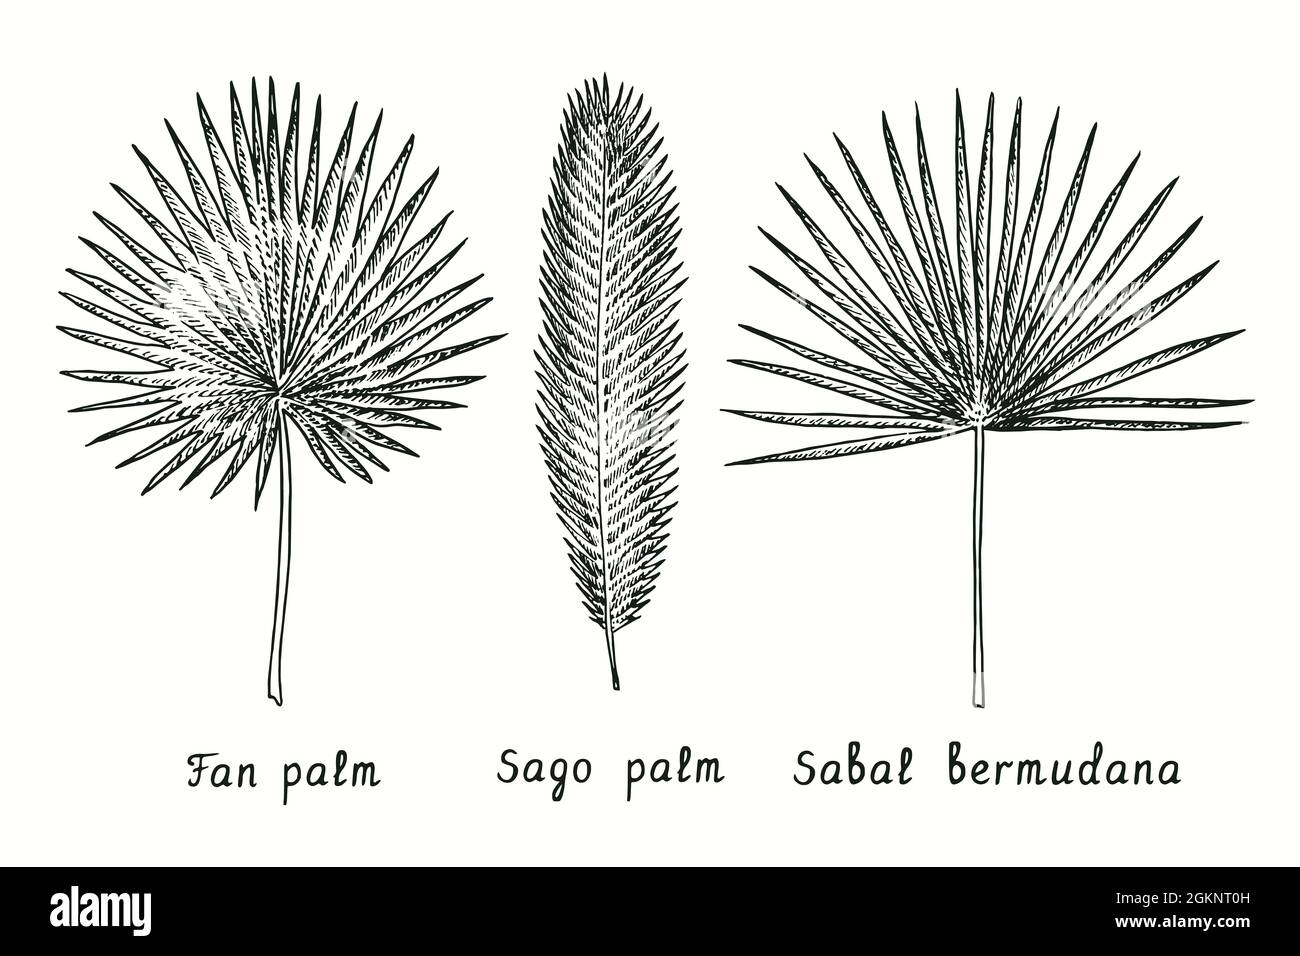 Fächerpalme (Livistona, australien), Sago-Palme (Cycas revolut), Sabal-Bermudana-Blatt. Tusche schwarz-weiße Doodle Zeichnung im Holzschnitt-Stil. Stockfoto